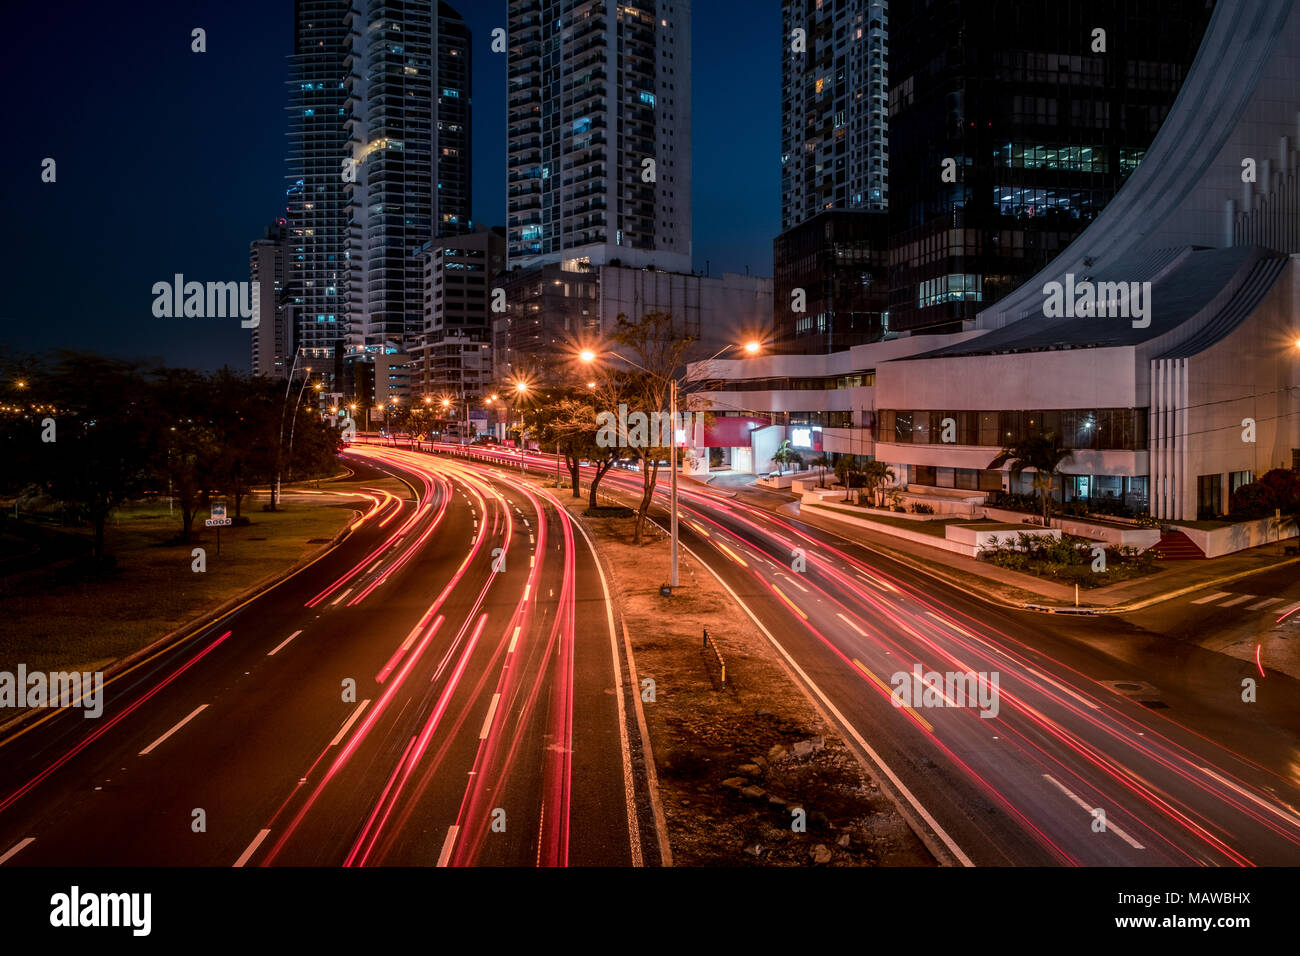 Le trafic routier dans la ville moderne de nuit - light trails, le trafic de la rue Banque D'Images